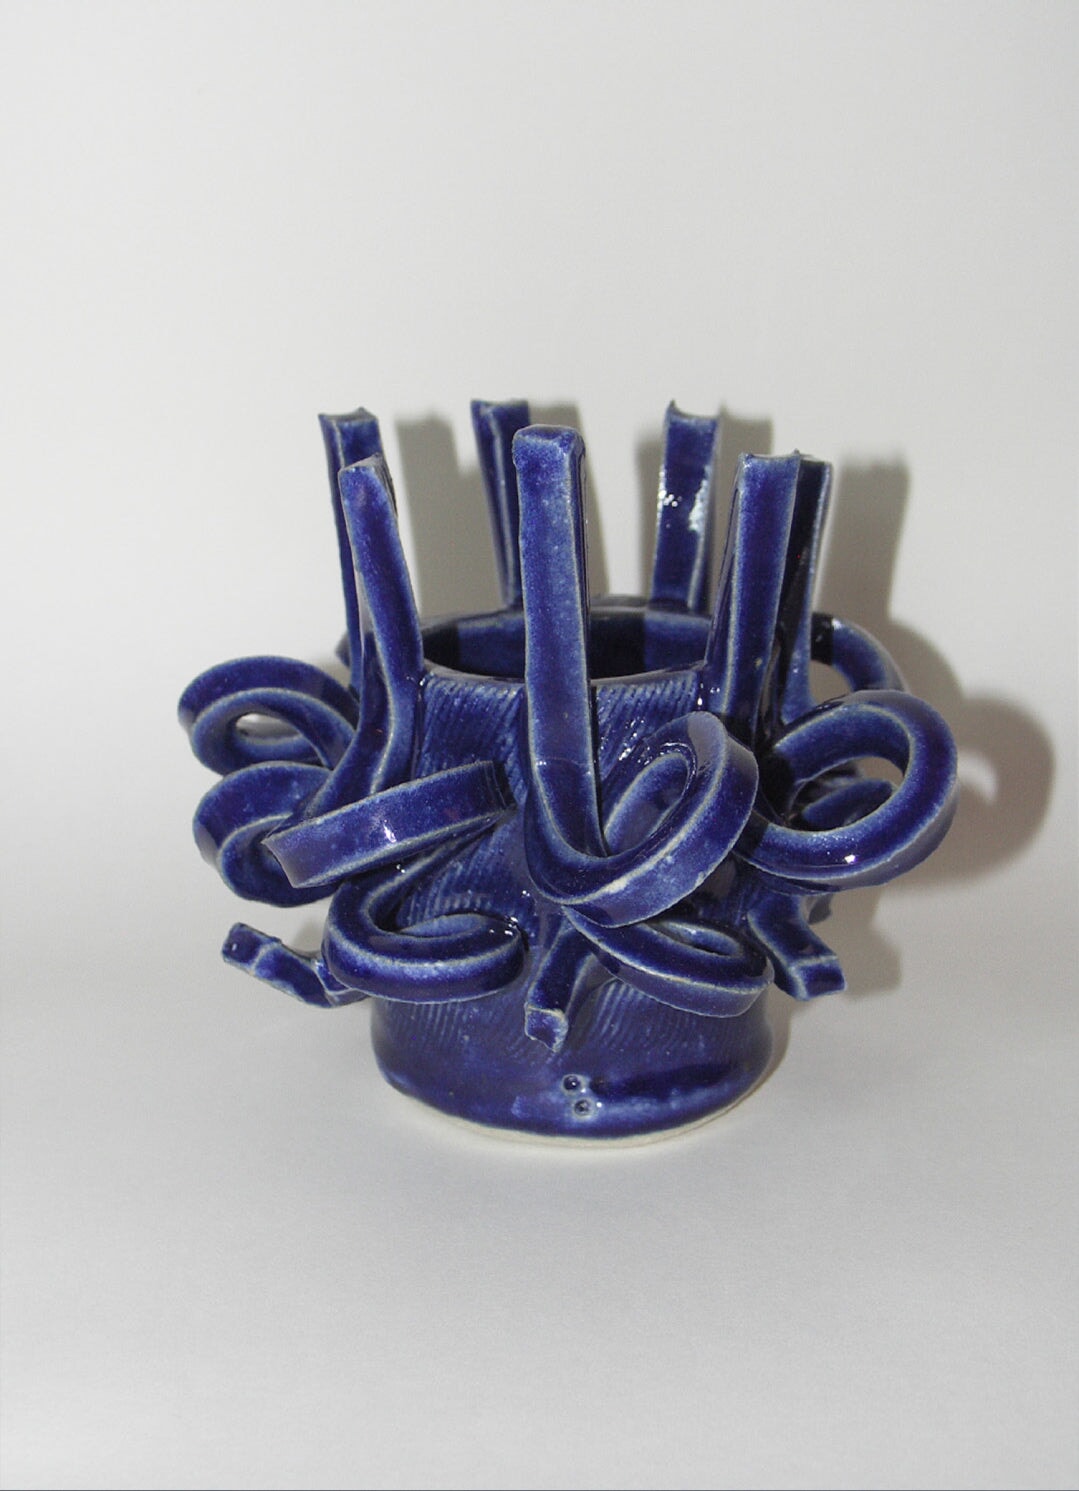 Around and Upward - Stable Ceramics